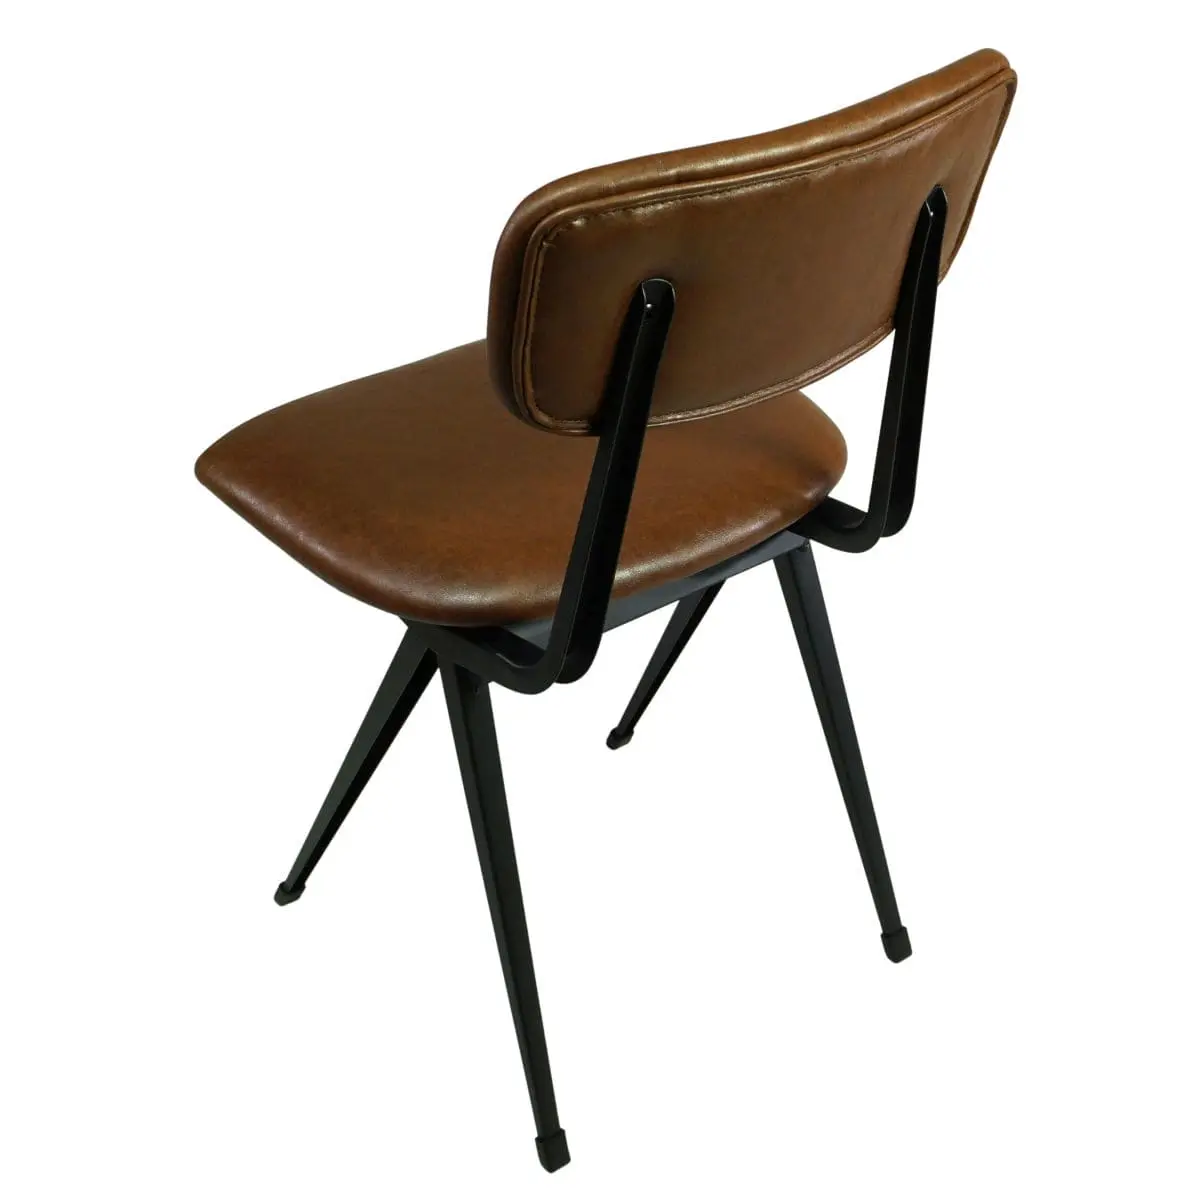 Esszimmerstuhl gepolstert braun, altes Design wie ein Schul Stuhl aus den 50er Jahren, Vintage Retro Stuhl